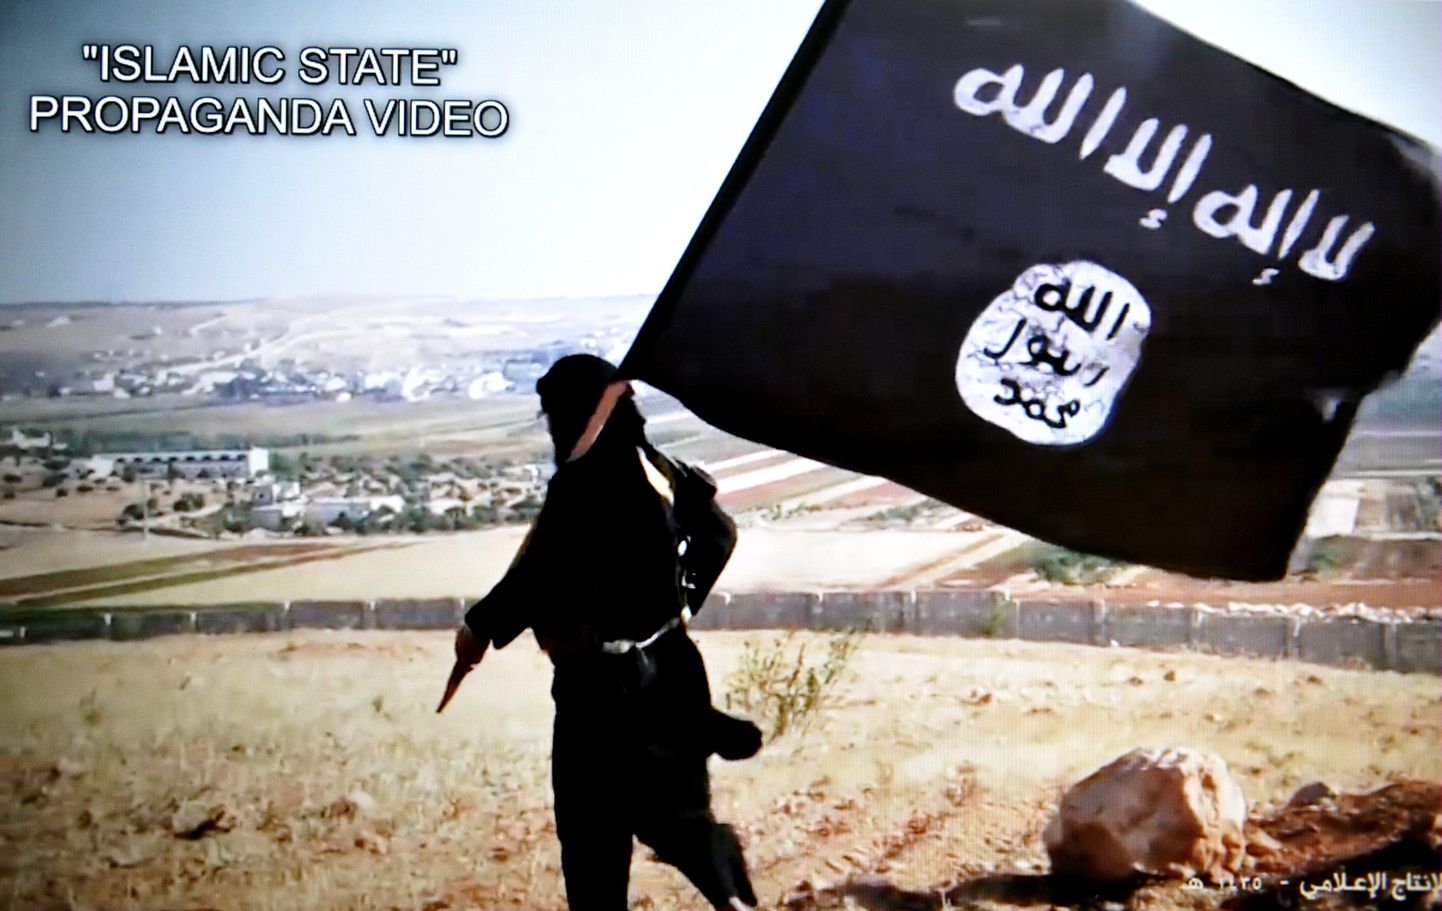 ISISe liige propagandavideos rühmituse lippu kandmas